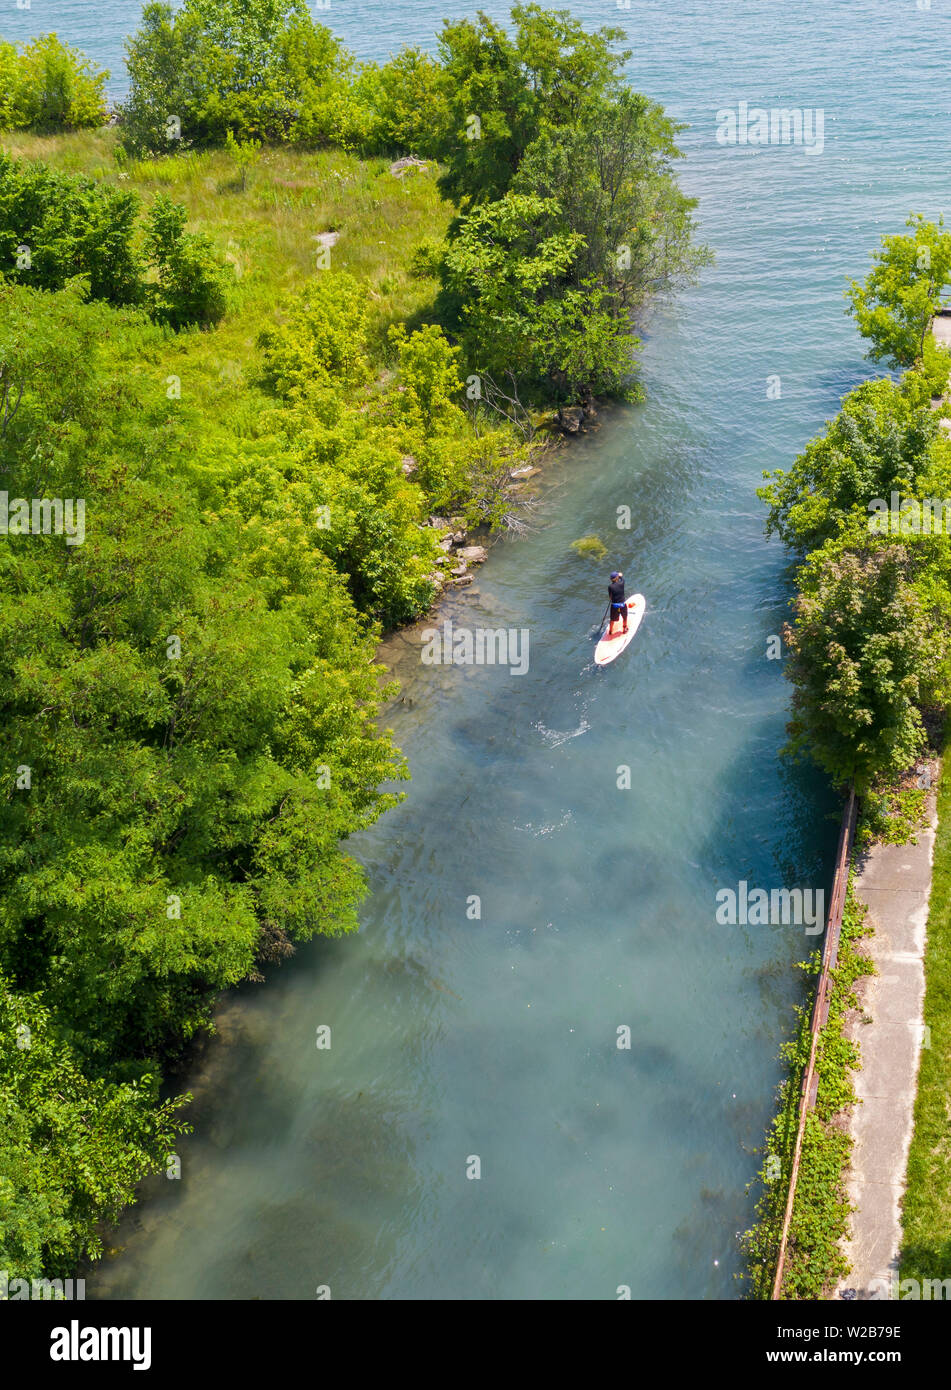 Detroit, Michigan - ein Mann auf einem Stand Up Paddle Board paddeln auf einem Kanal in Richtung Detroit River. Stockfoto